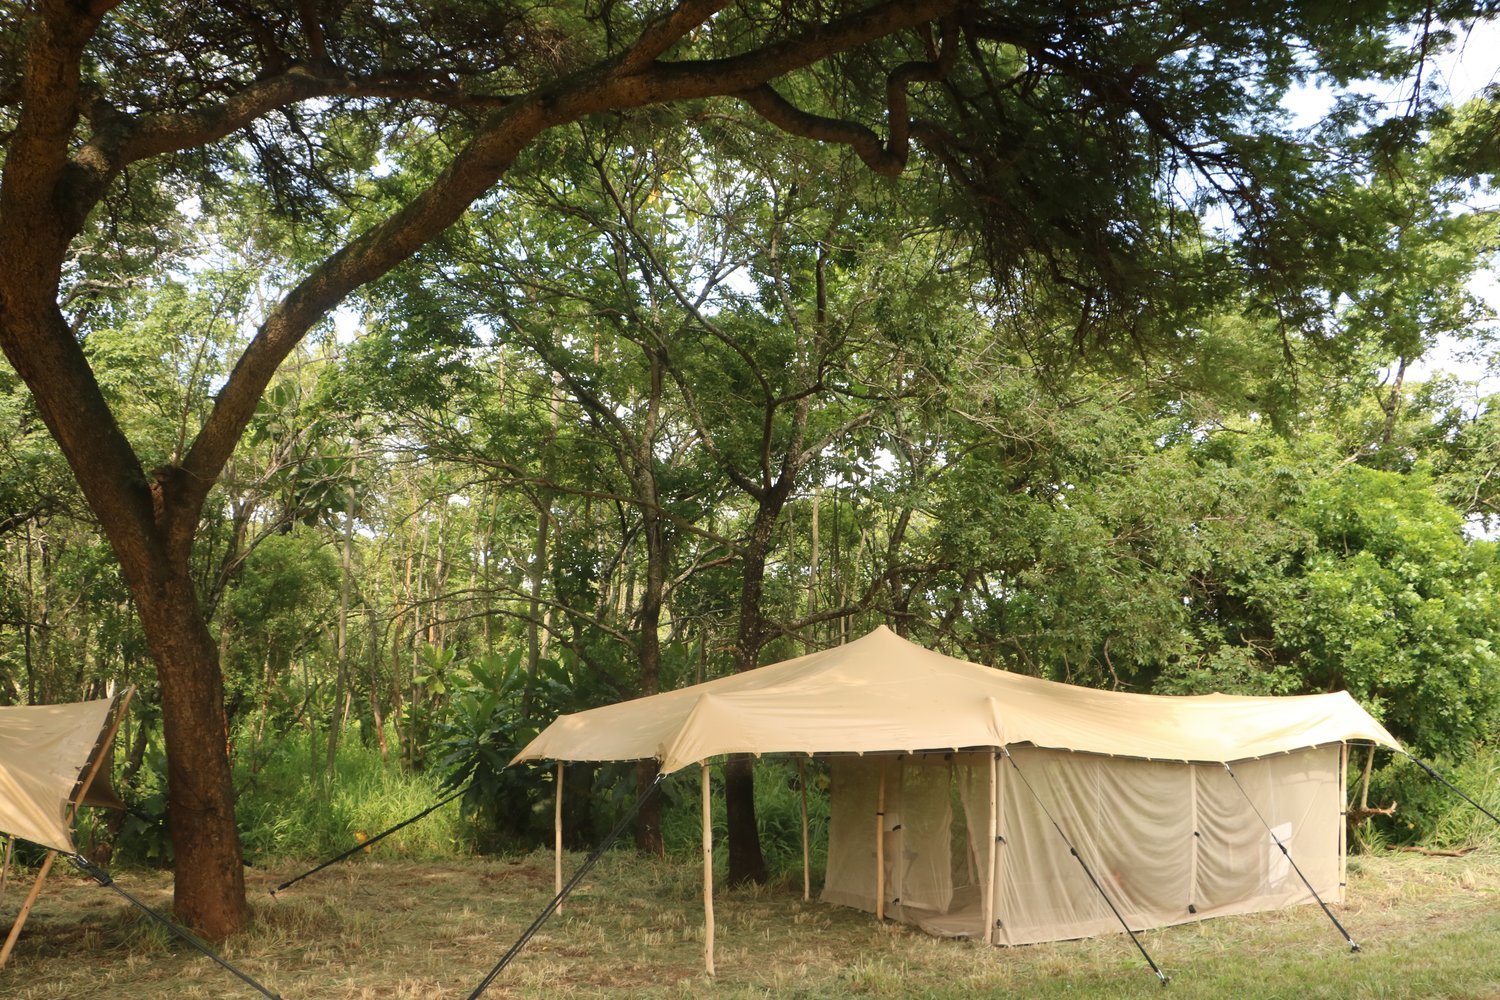 Tusk & Mane Camp  - Lower Zambezi Zambia